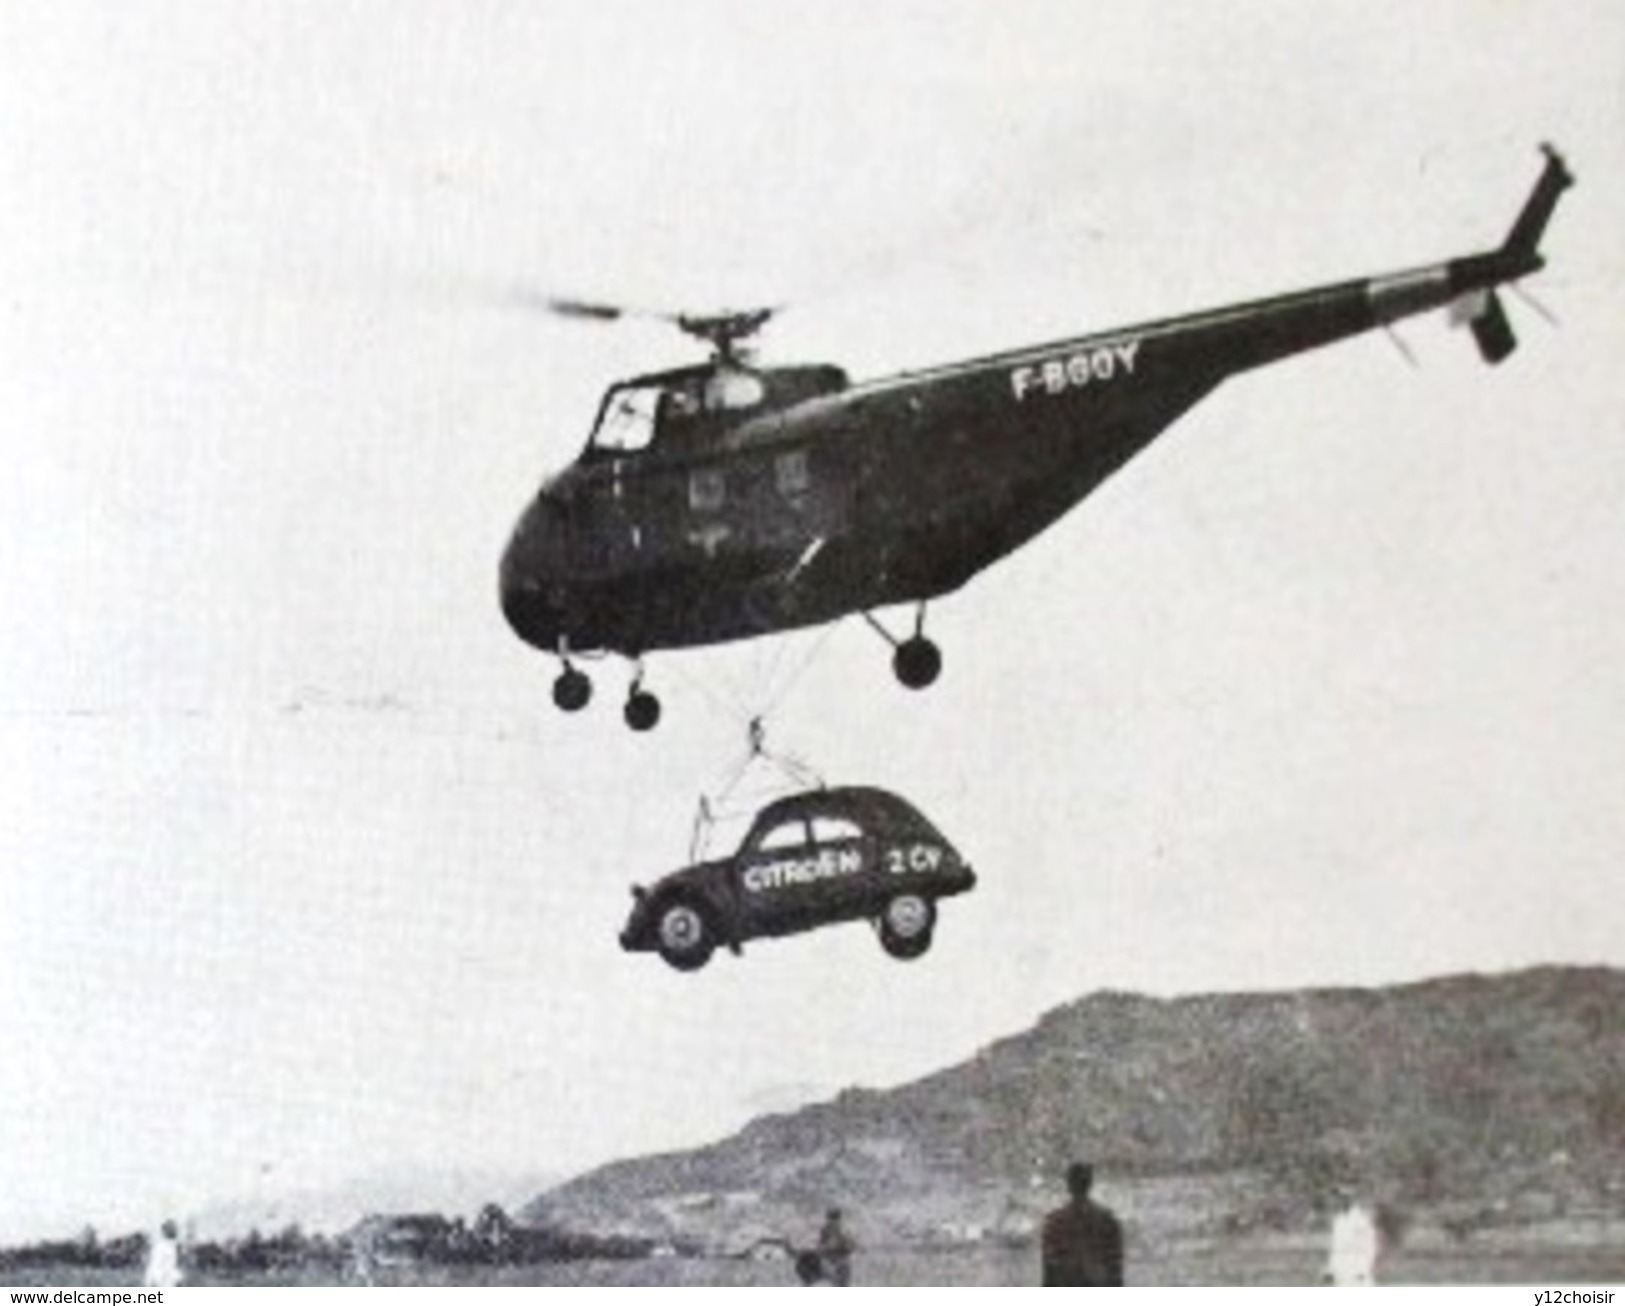 LIVRET 1954 LES HELICOPTERES 2 CV CITROEN BIBLIOTHEQUE DU TRAVAIL BT 285 - Hubschrauber